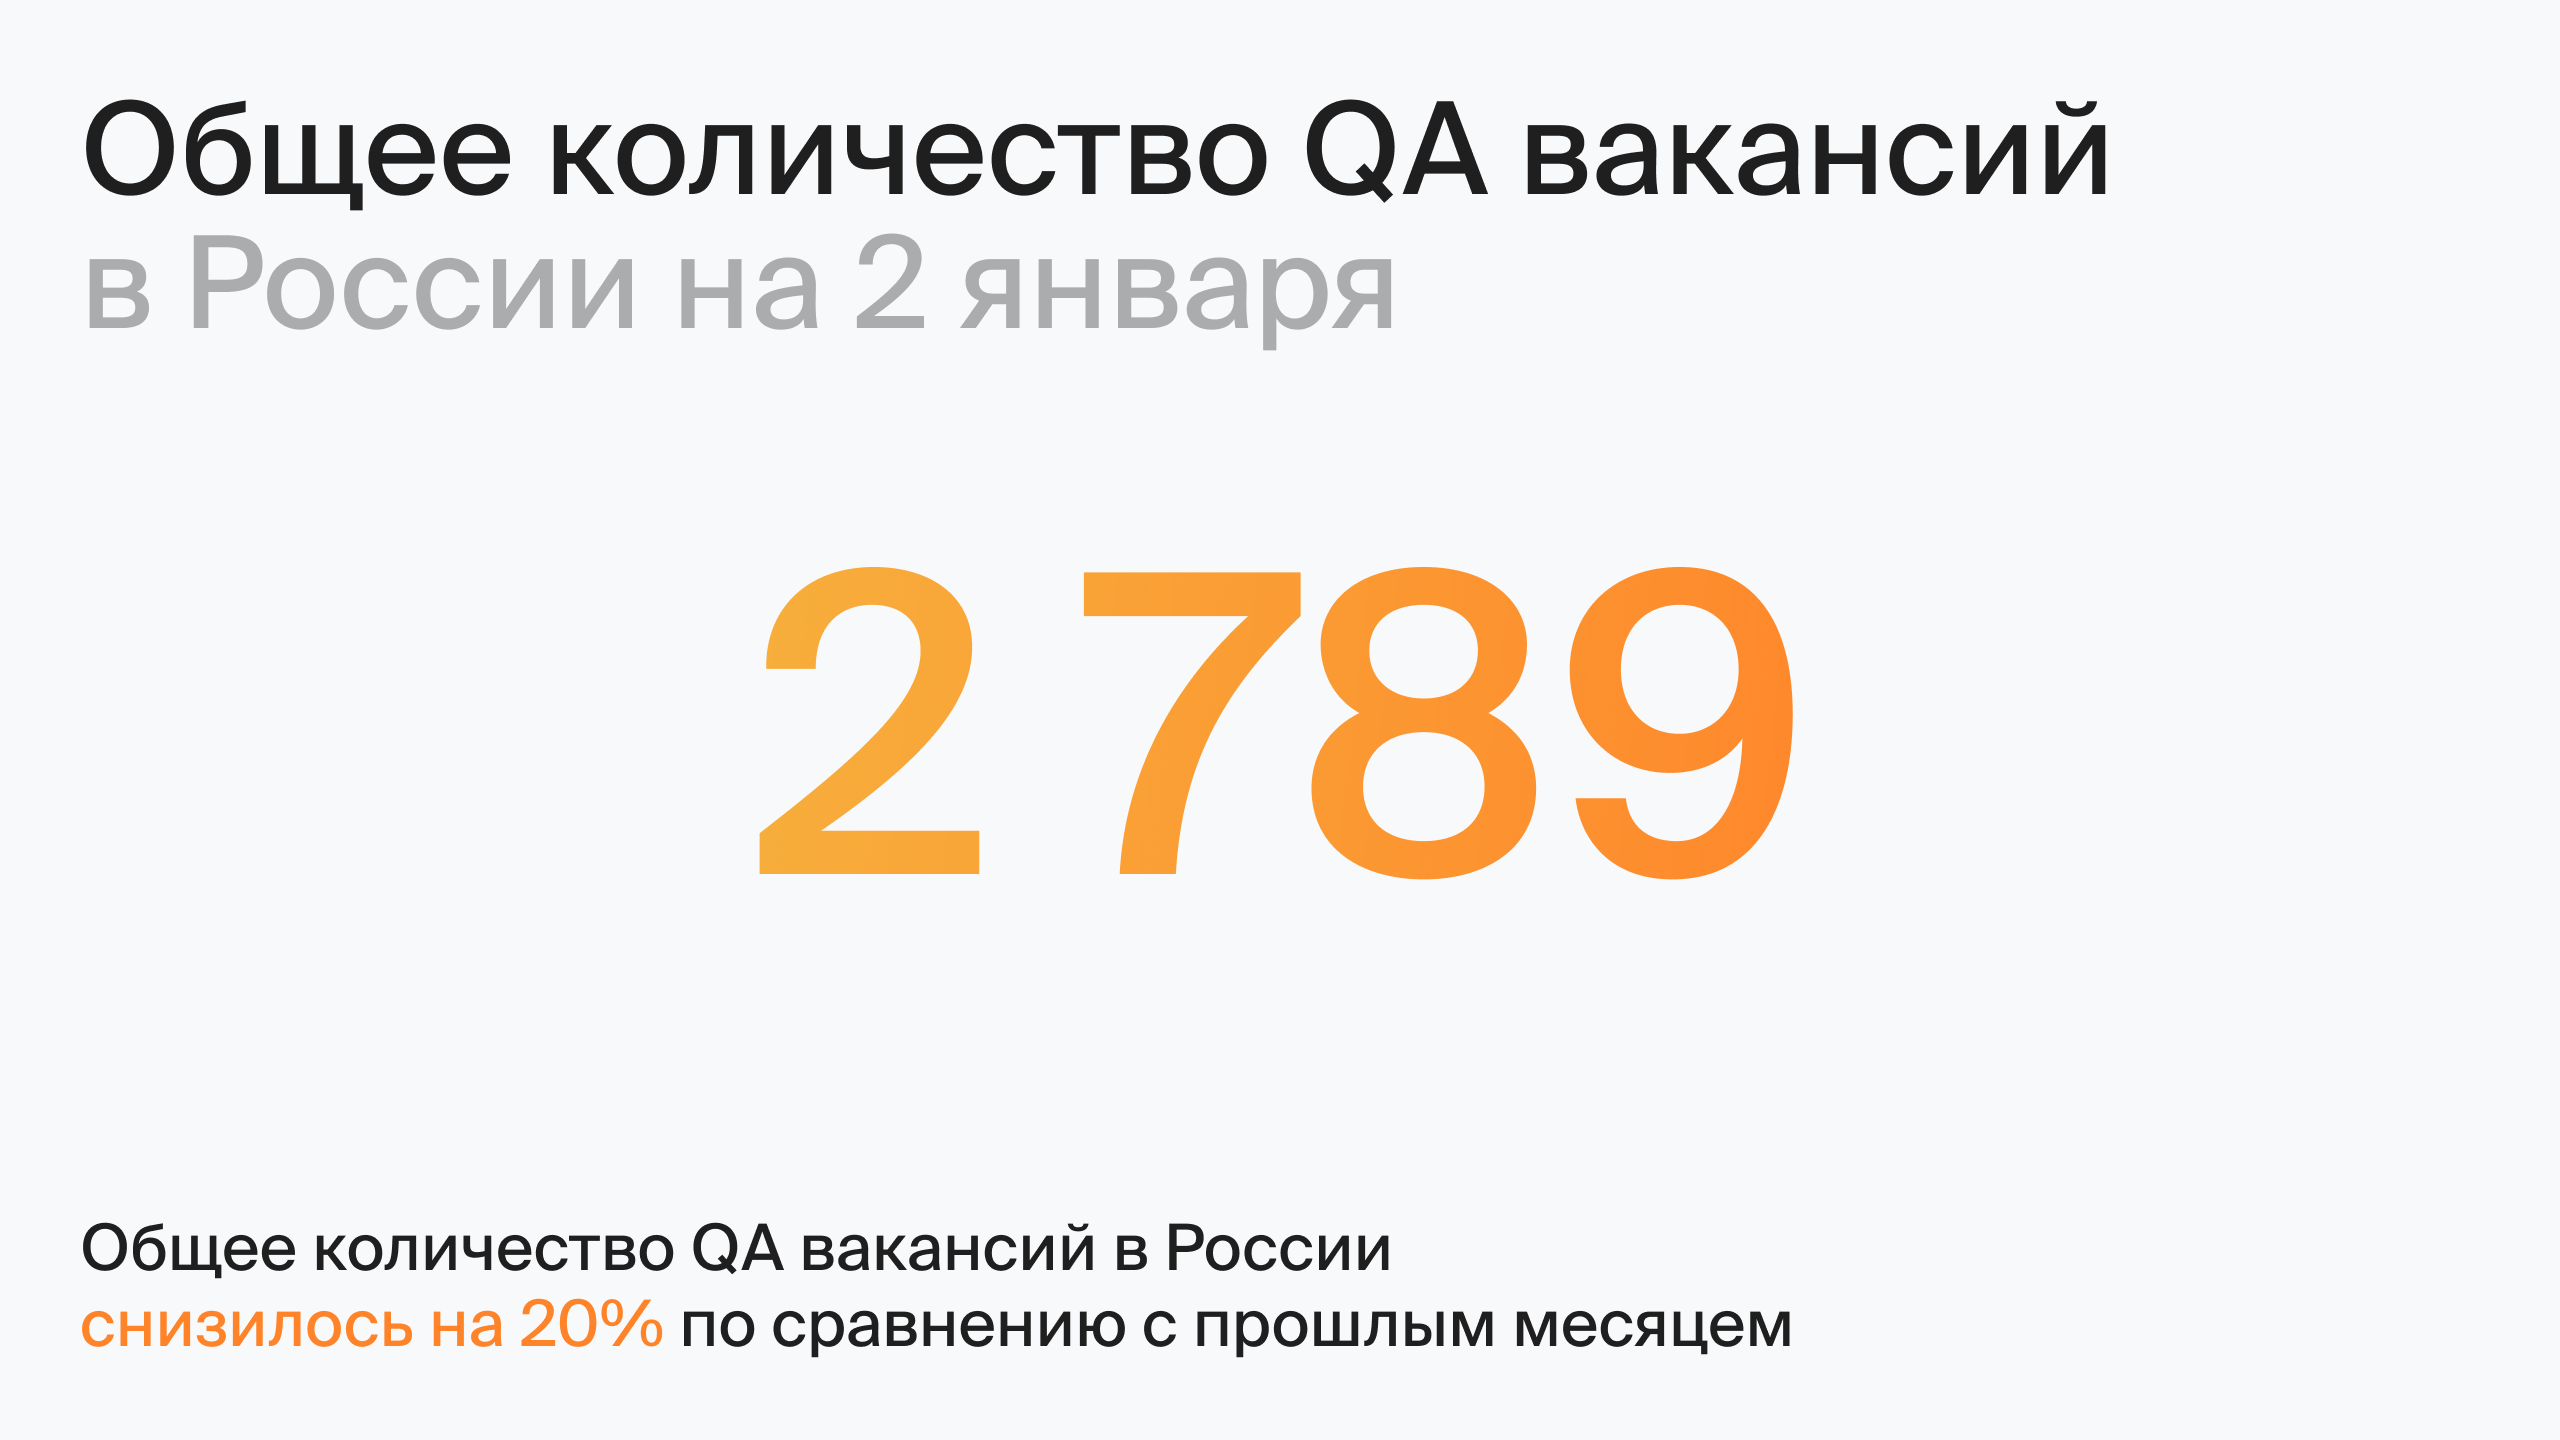 Общее количество QA вакансий в России на 2 января (по данным hh.ru)